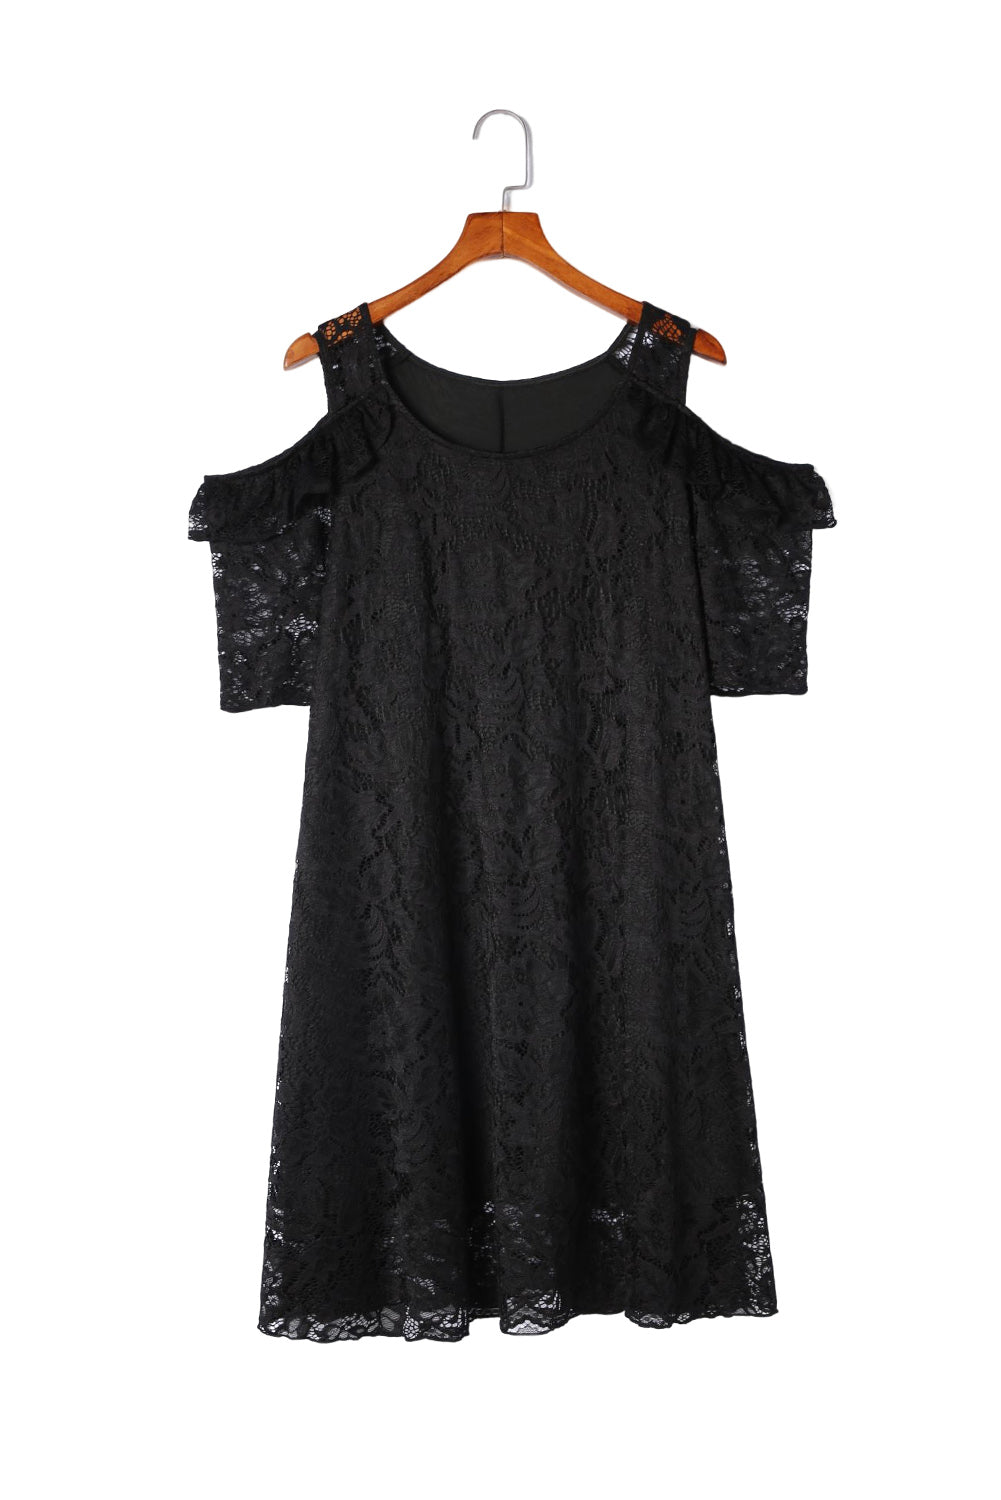 Black Cold Shoulder Lace Plus Size Dress Plus Size Dresses JT's Designer Fashion